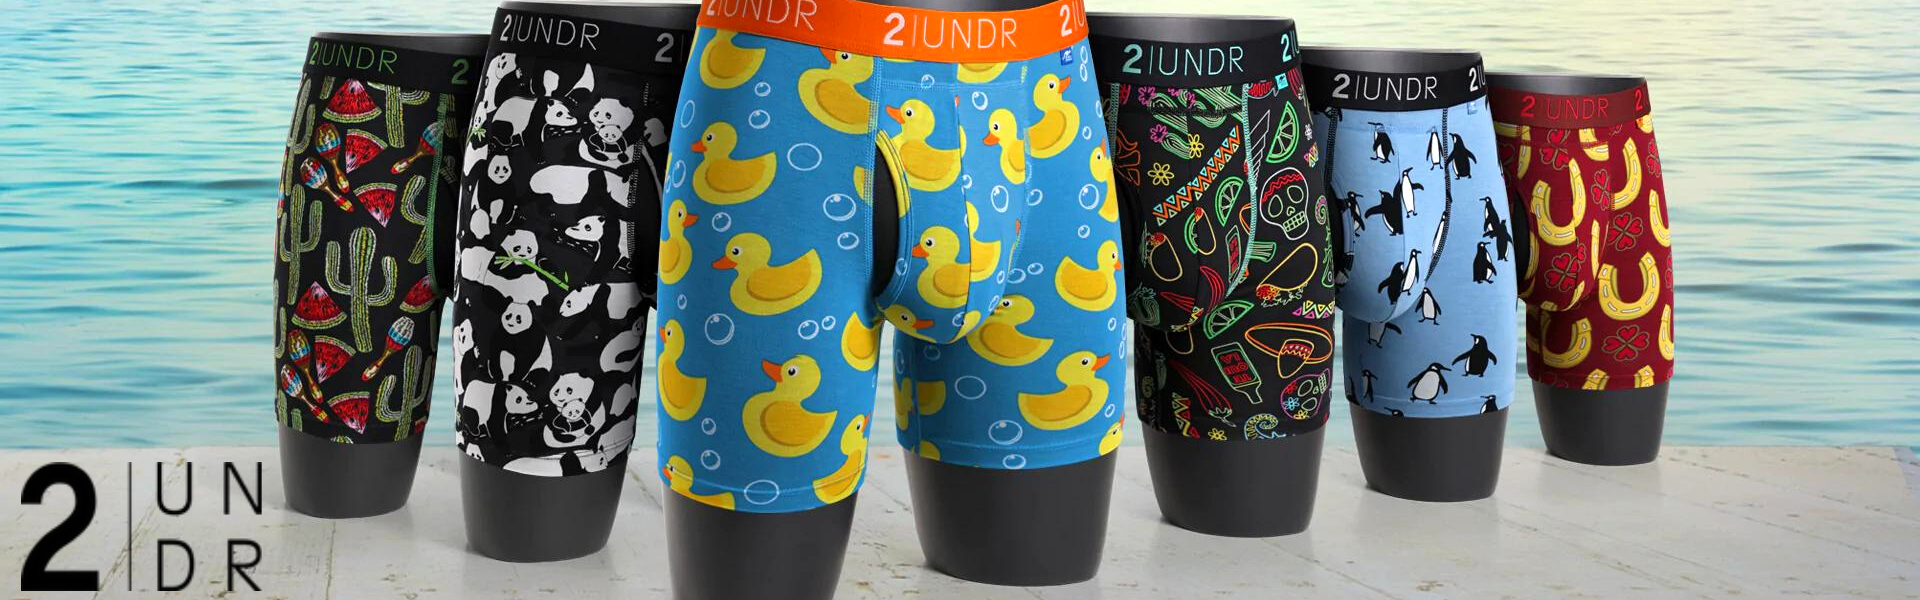 2UNDR Sale Canada, Shop 2UNDR Boxers, Shirts, Pants for Men